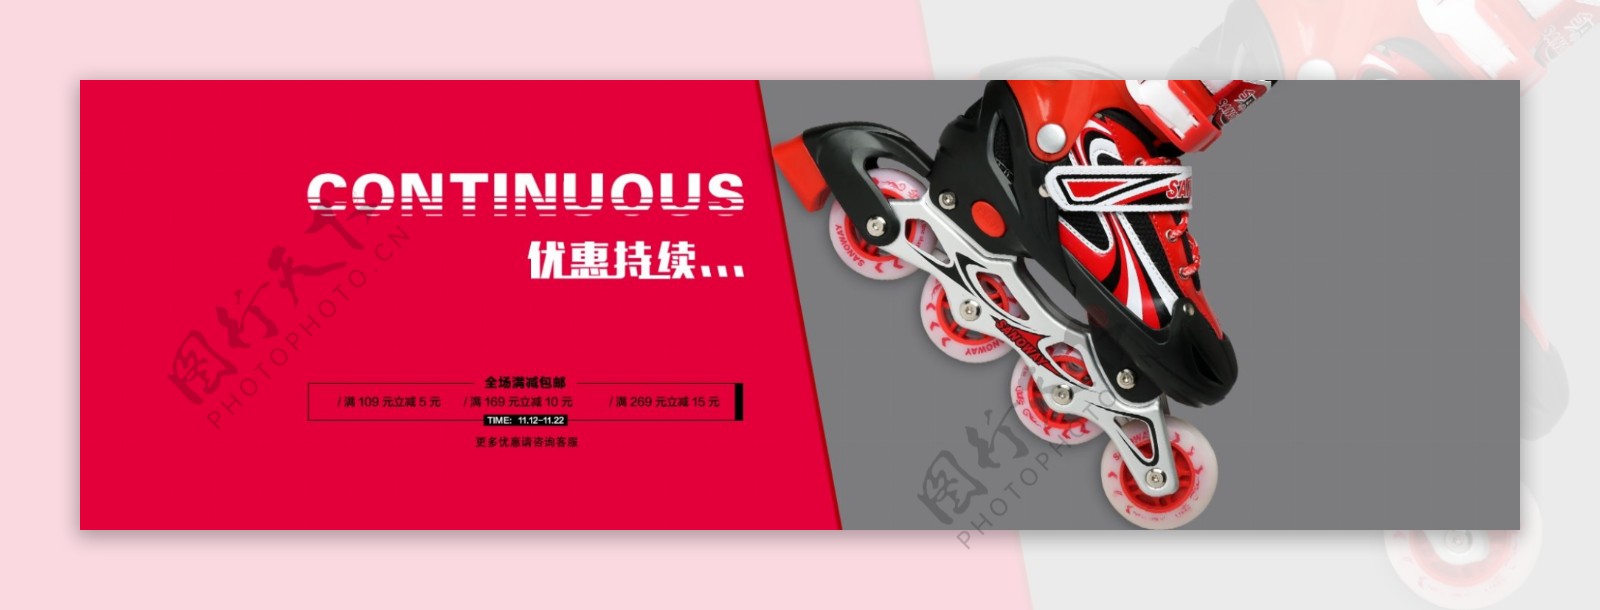 首页海报淘宝天猫轮滑鞋儿童活动产品背景